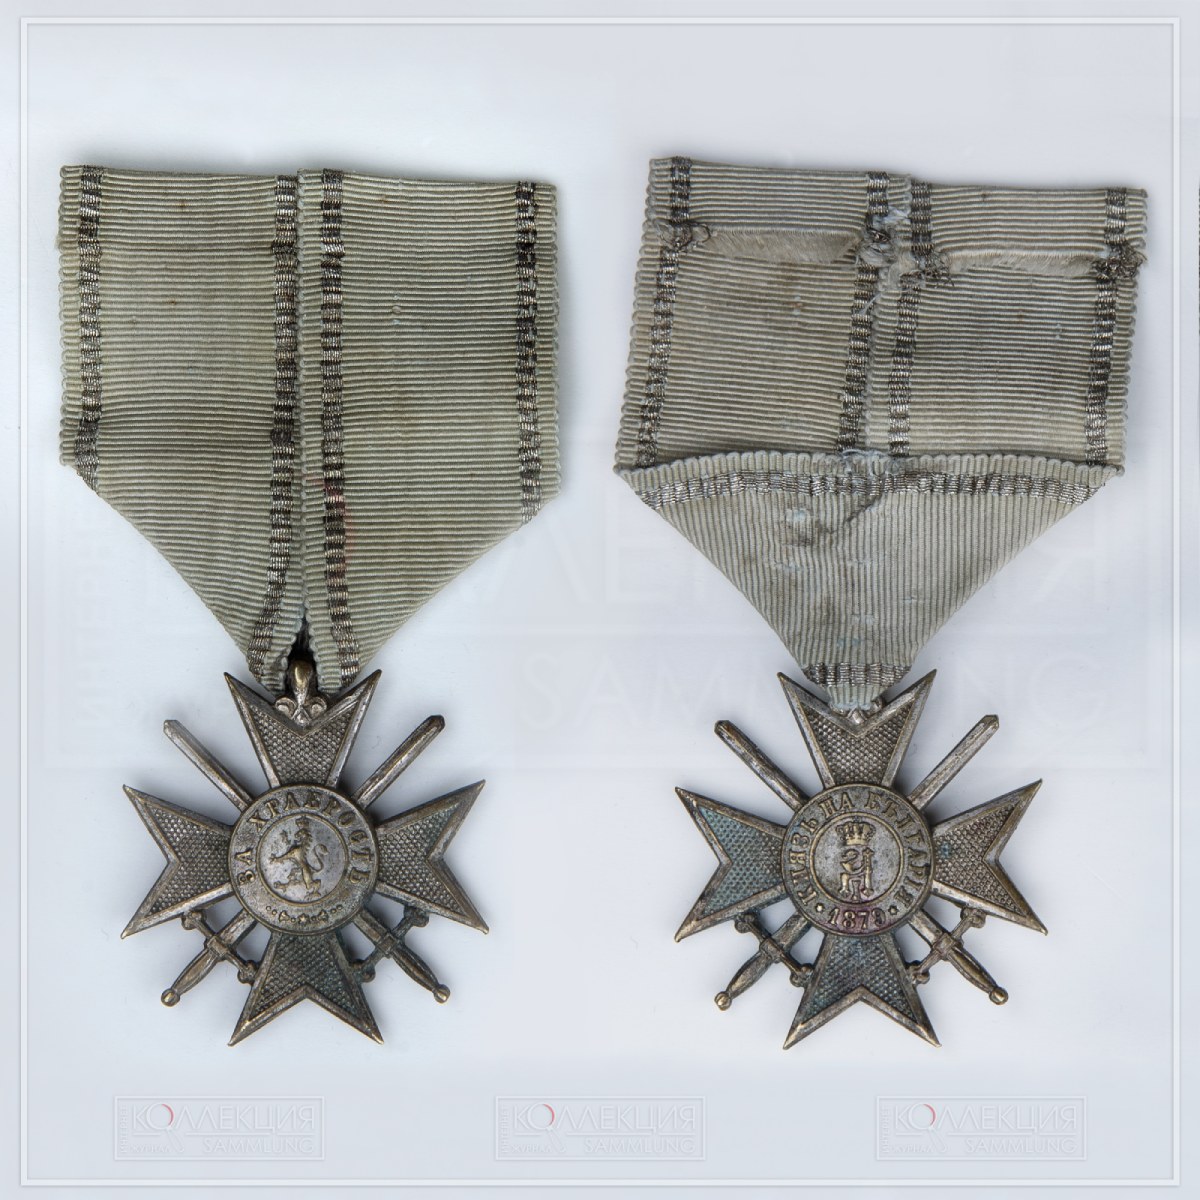 Болгарский крест воинский крест «За храбрость» первой эмиссии 1880 года. Коллекция Михаила Тренихина